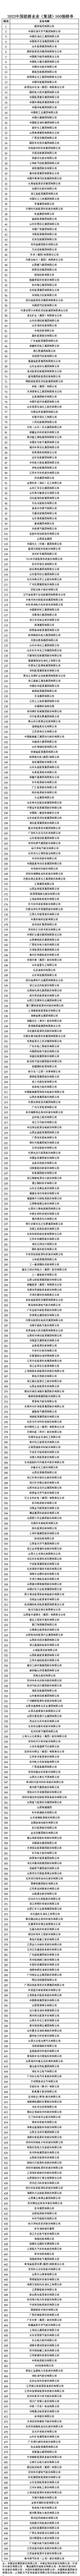 中国平煤神马31位、河南平高电气257位！最新500强榜单出炉